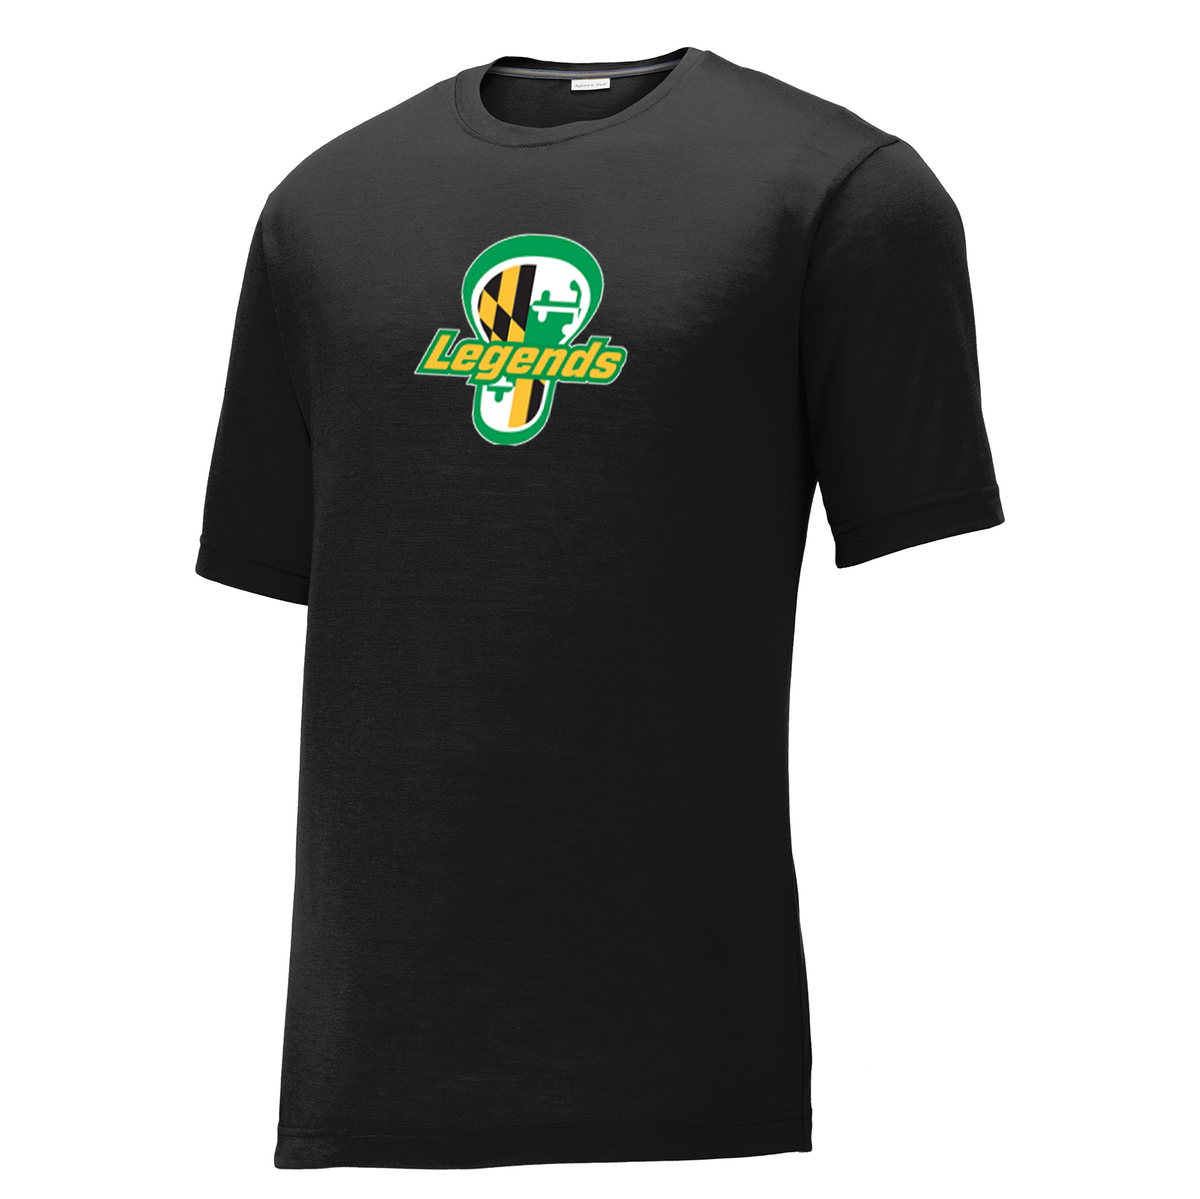 Legends Lacrosse CottonTouch Performance T-Shirt